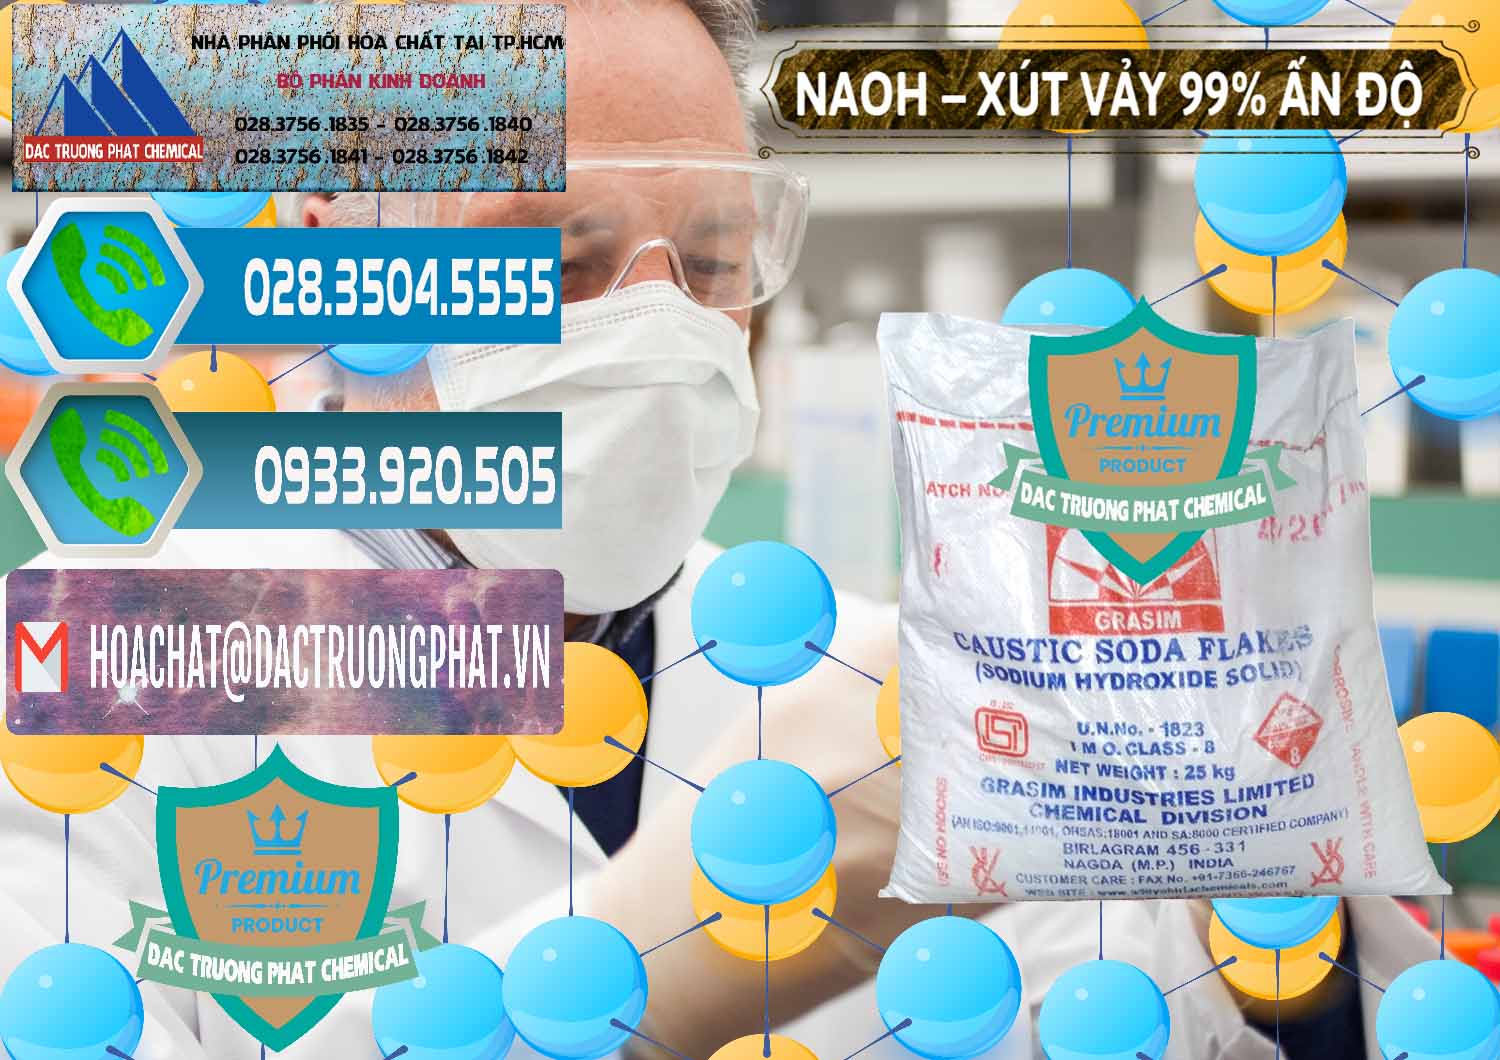 Bán ( phân phối ) Xút Vảy - NaOH Vảy 99% Aditya Birla Grasim Ấn Độ India - 0171 - Cty cung cấp & kinh doanh hóa chất tại TP.HCM - congtyhoachat.net